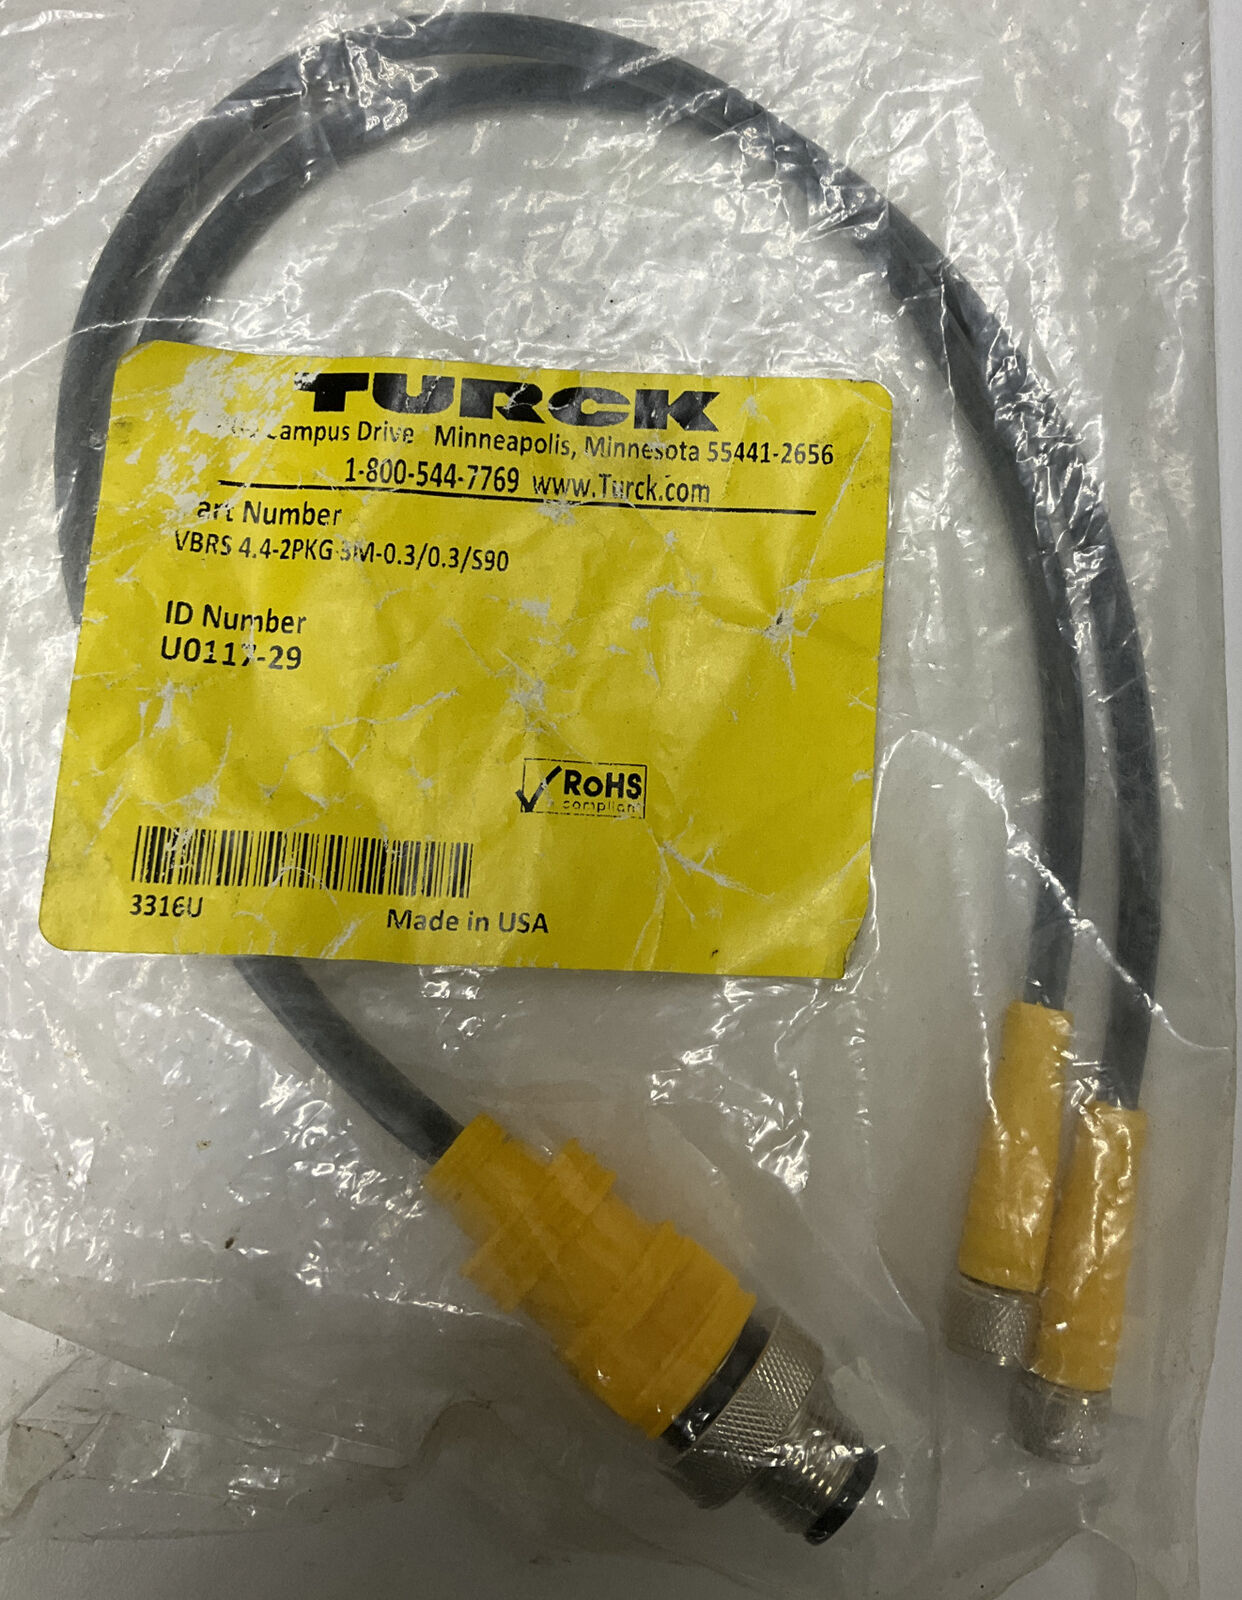 Turck VBRS 4.4-2PKG 3M-O.3/0.3/590 UO117-29 Acuator-Sensor Splitter (YE236) - 0